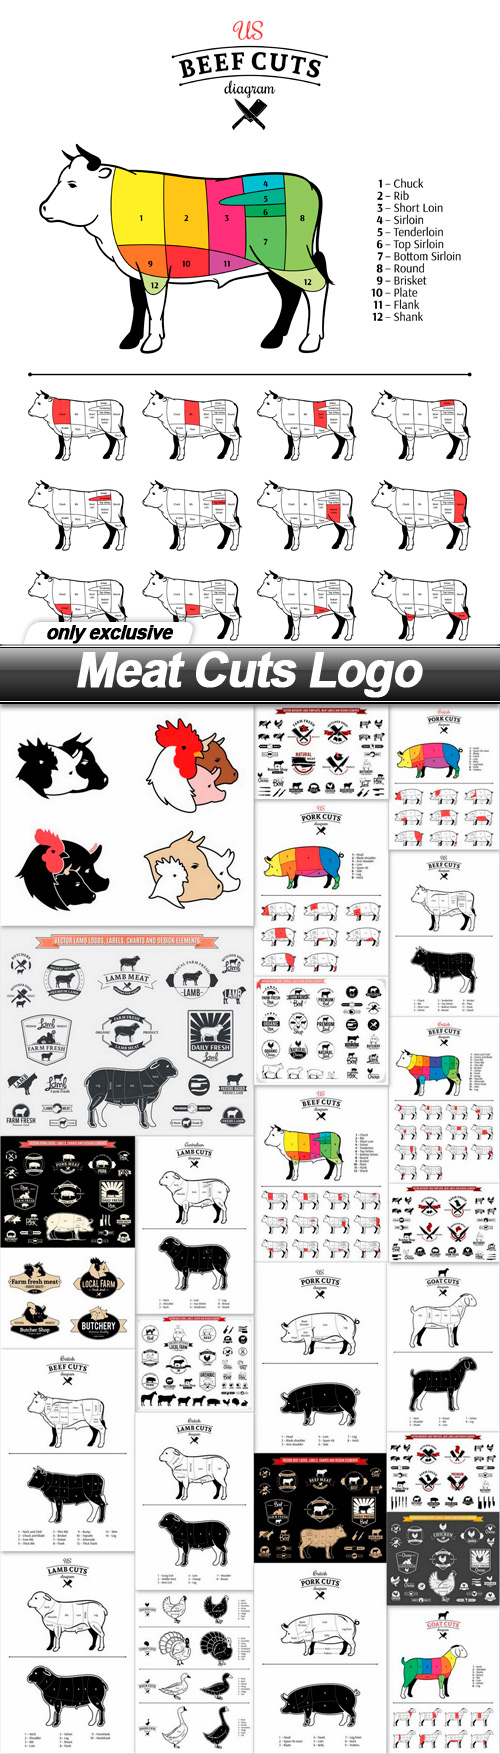 Meat Cuts Logo - 25 EPS